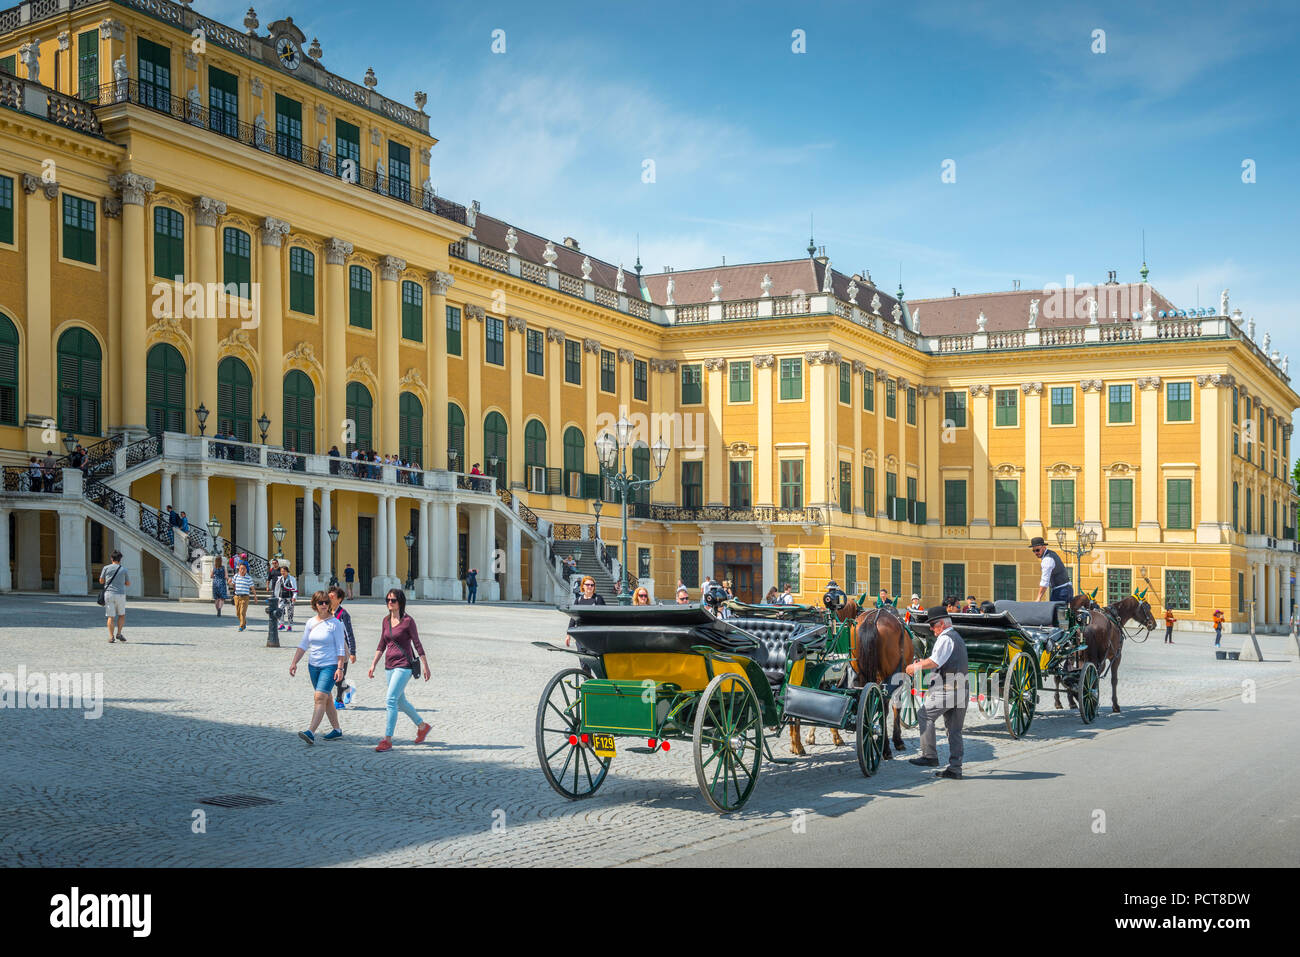 Europa, Österreich, Wien, Schloss, Palast, Schönbrunn, Vienna, Austria, architecture, capital Stock Photo